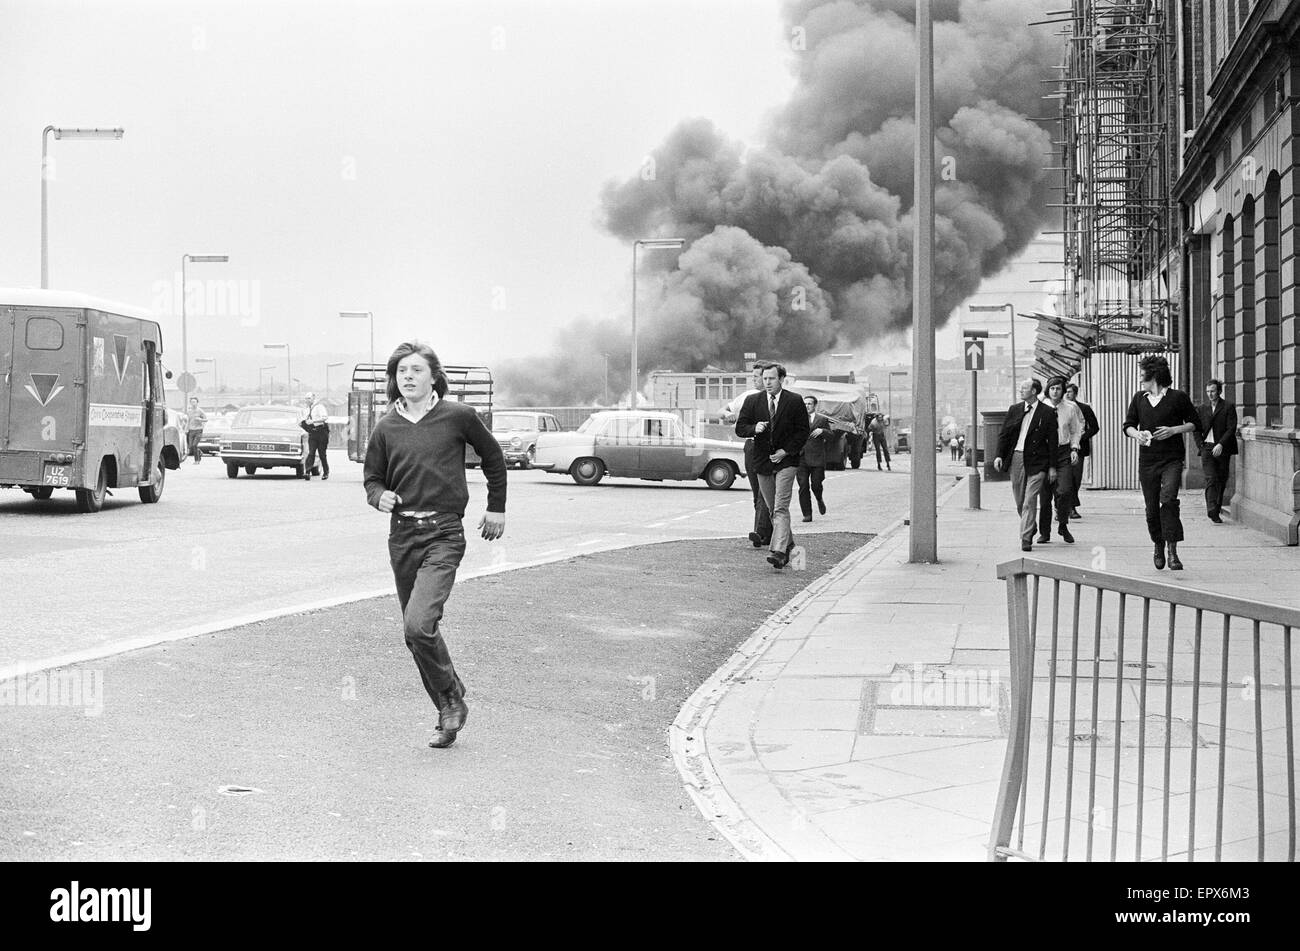 Blutiger Freitag ist die Bezeichnung für die Bombardierungen durch die Provisional Irish Republican Army (IRA) in Belfast am 21. Juli 1972. 22 Bomben explodierten in einem Zeitraum von 80 Minuten, neun Menschen